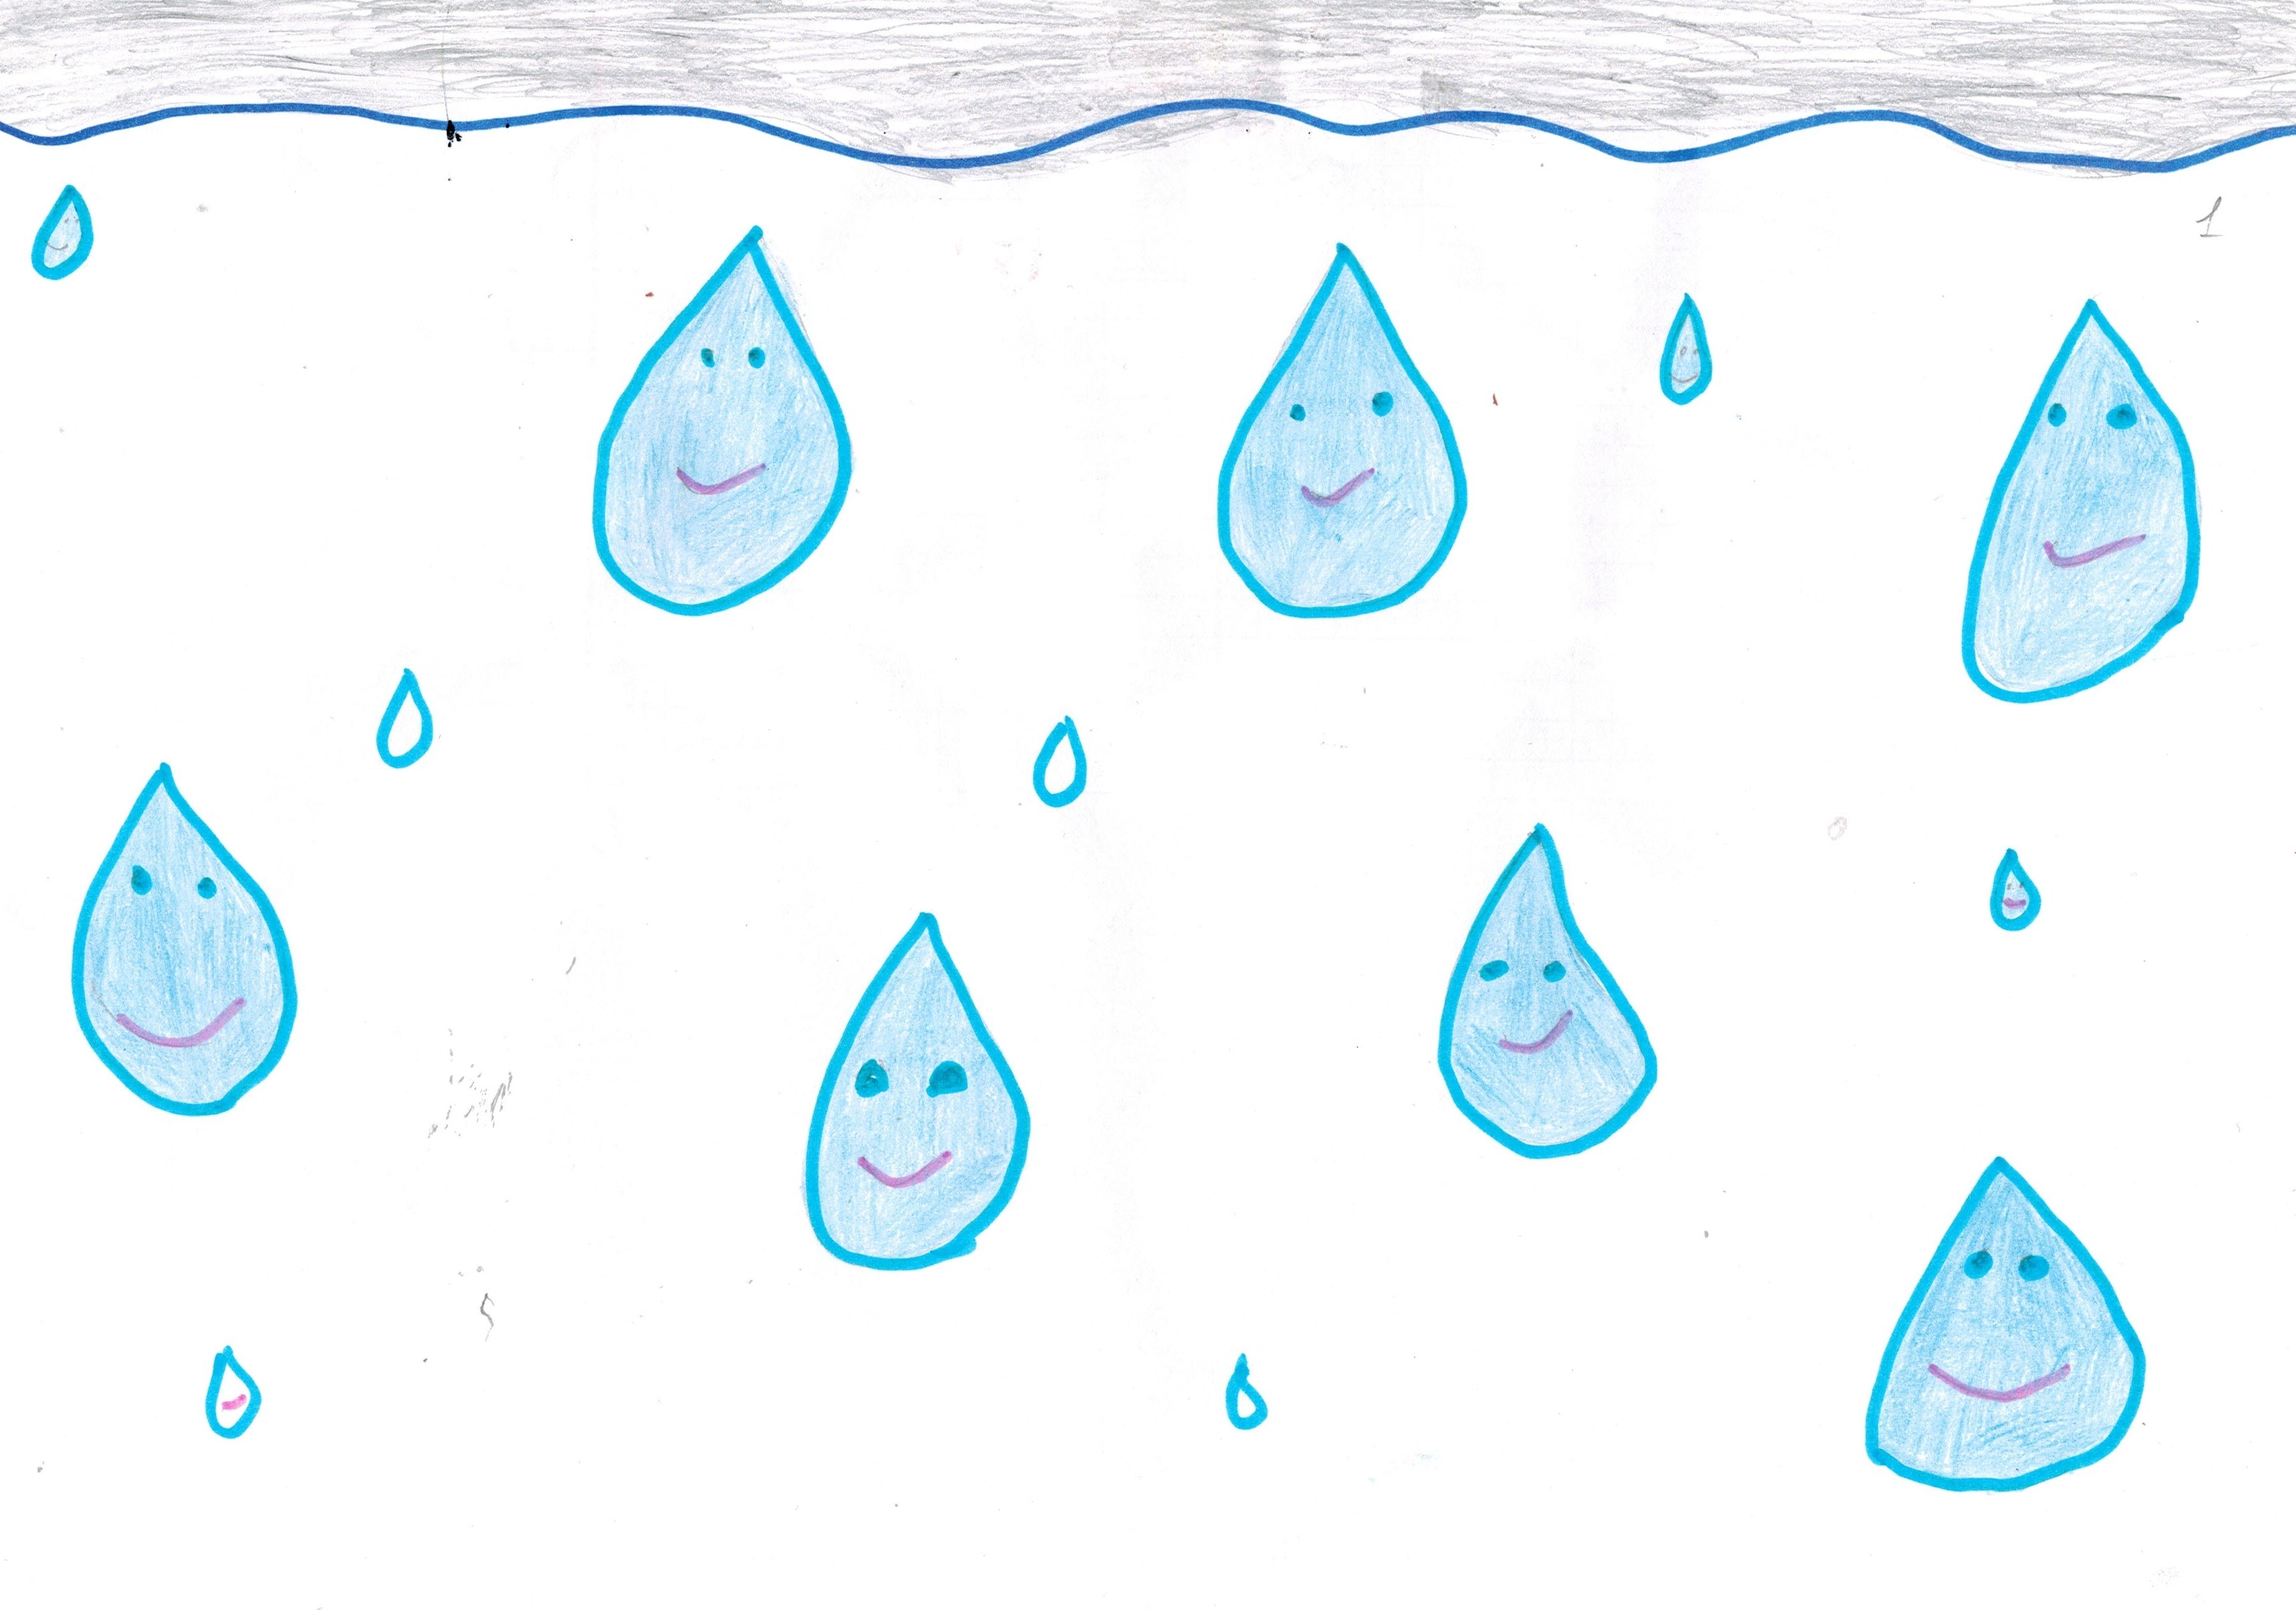 Капелька картинка для детей. Капелька нарисованная. Рисунок капельки воды для детей с улыбкой. Капелька воды шаблон. Раскраска капелька воды для детей